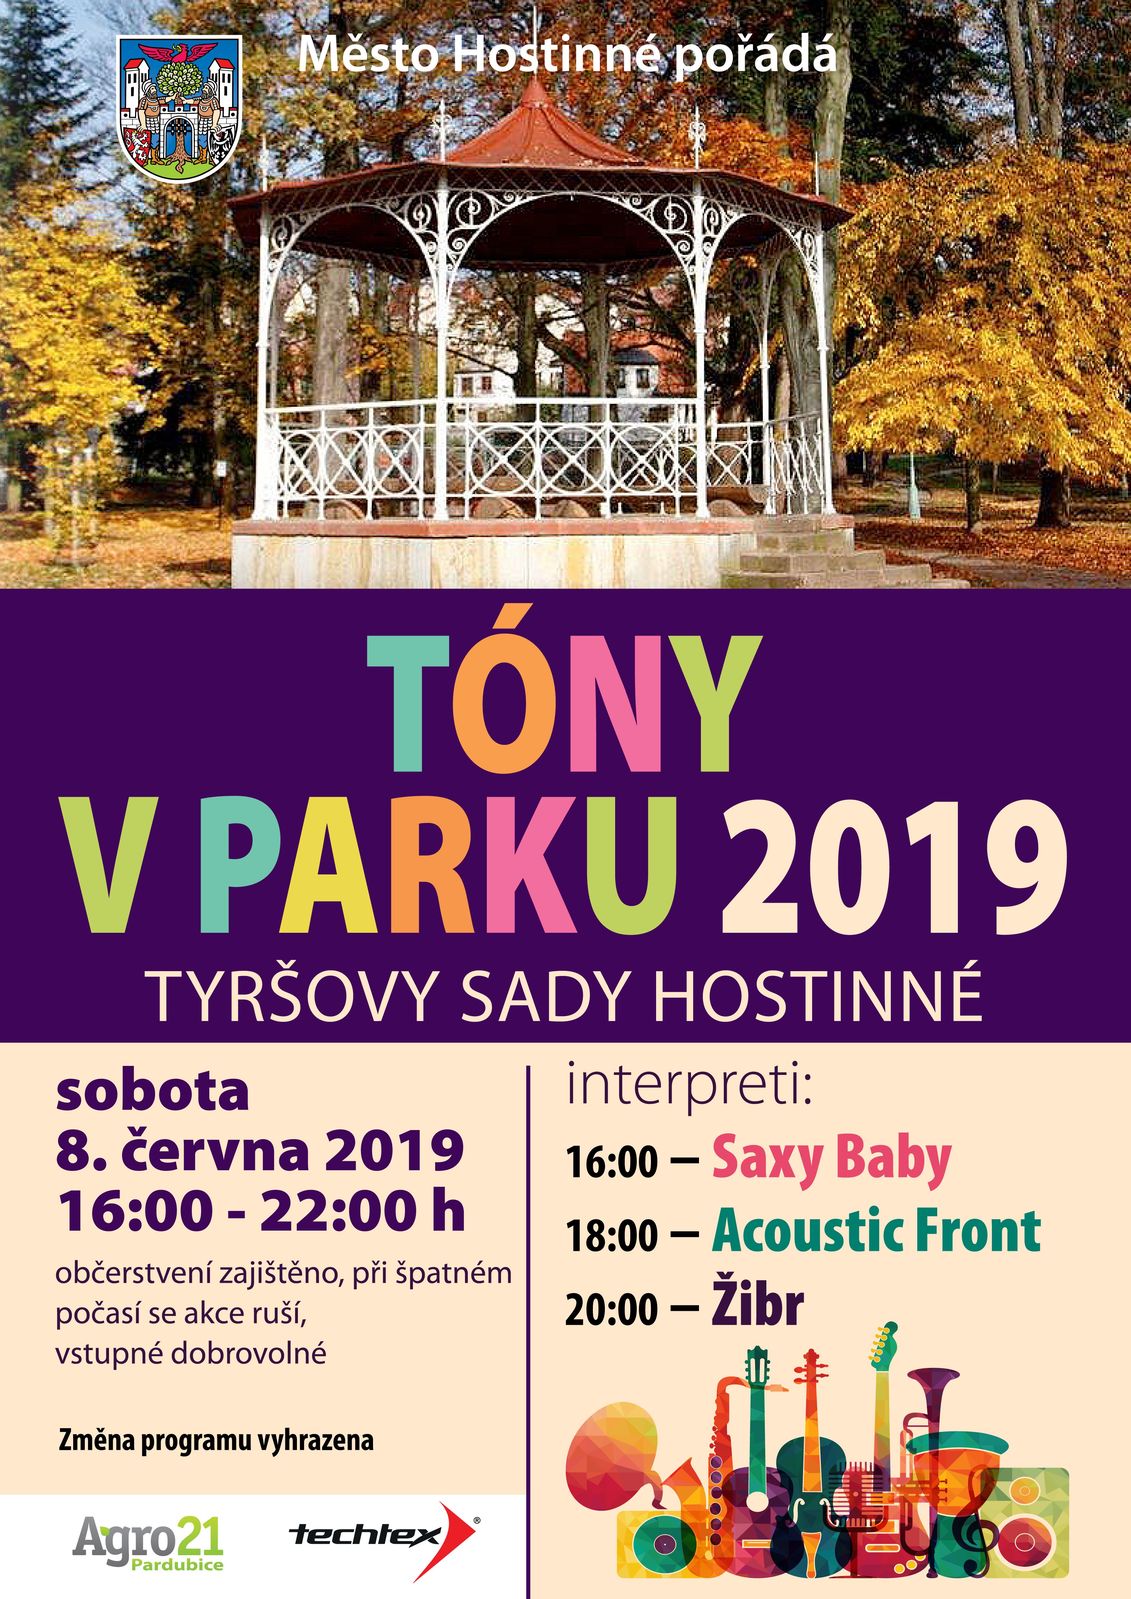 Pozvánka - Tóny v parku 2019, Tyršovy sady Hostinné